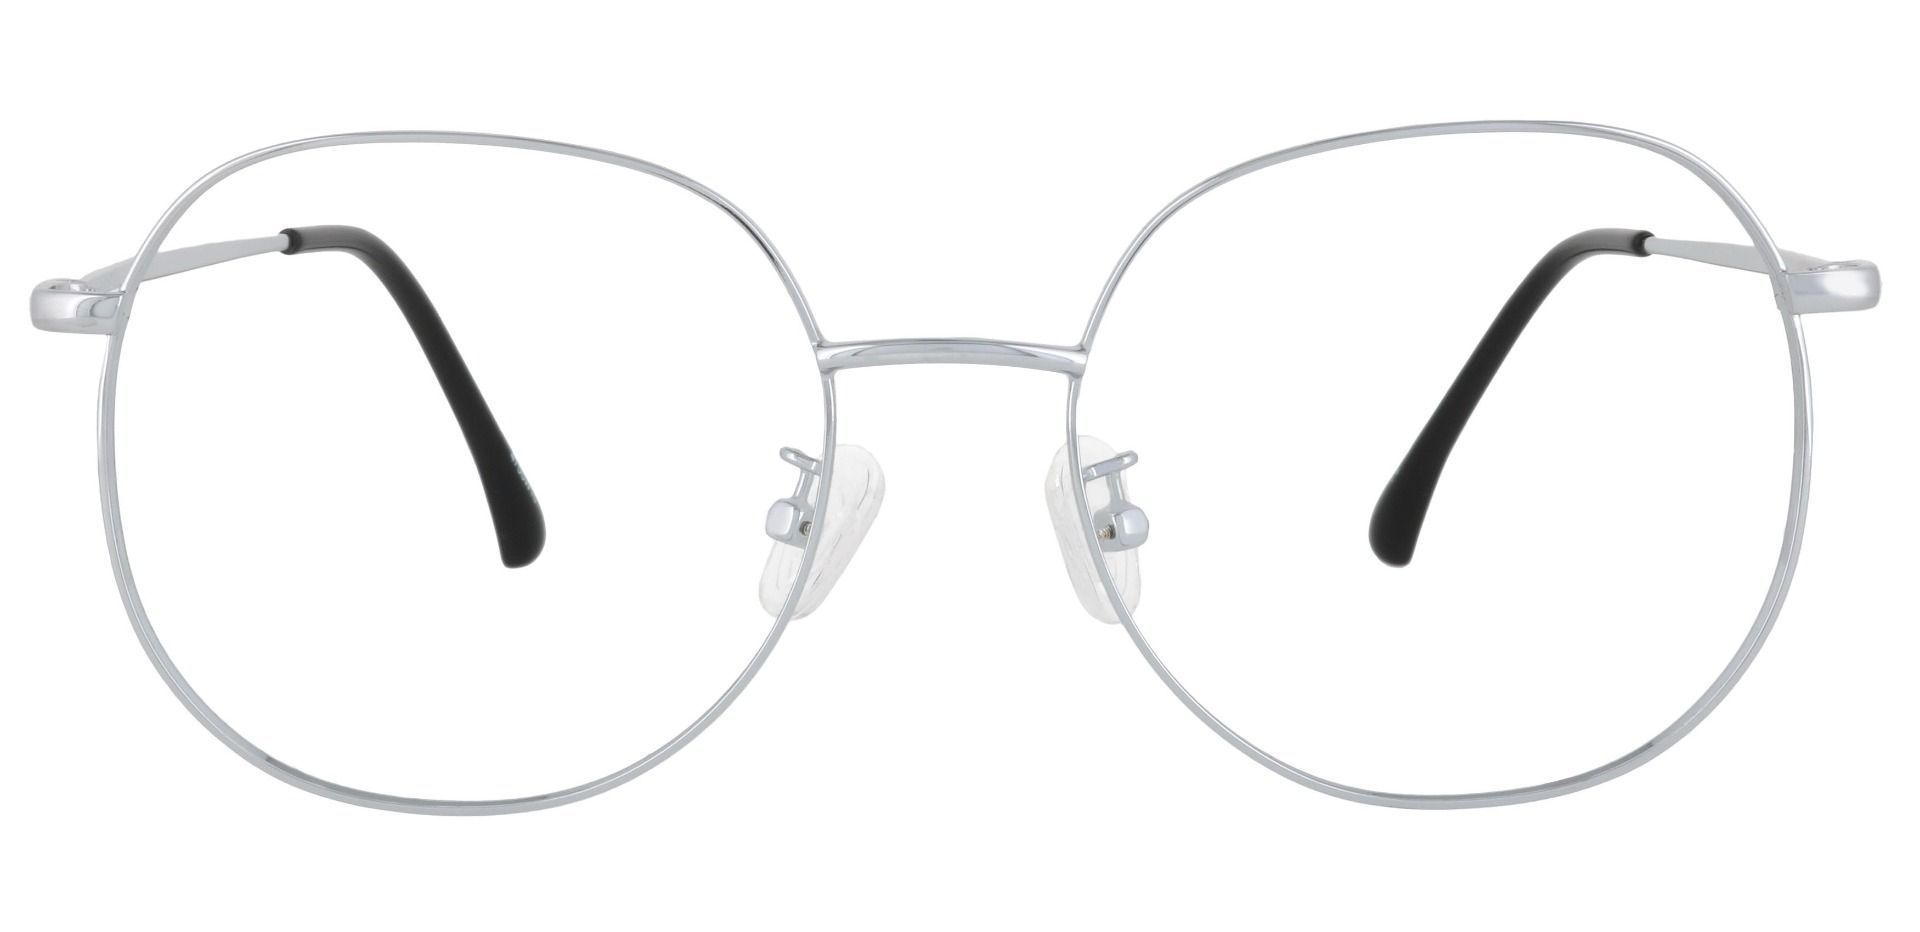 Holden Oval Prescription Glasses - Silver